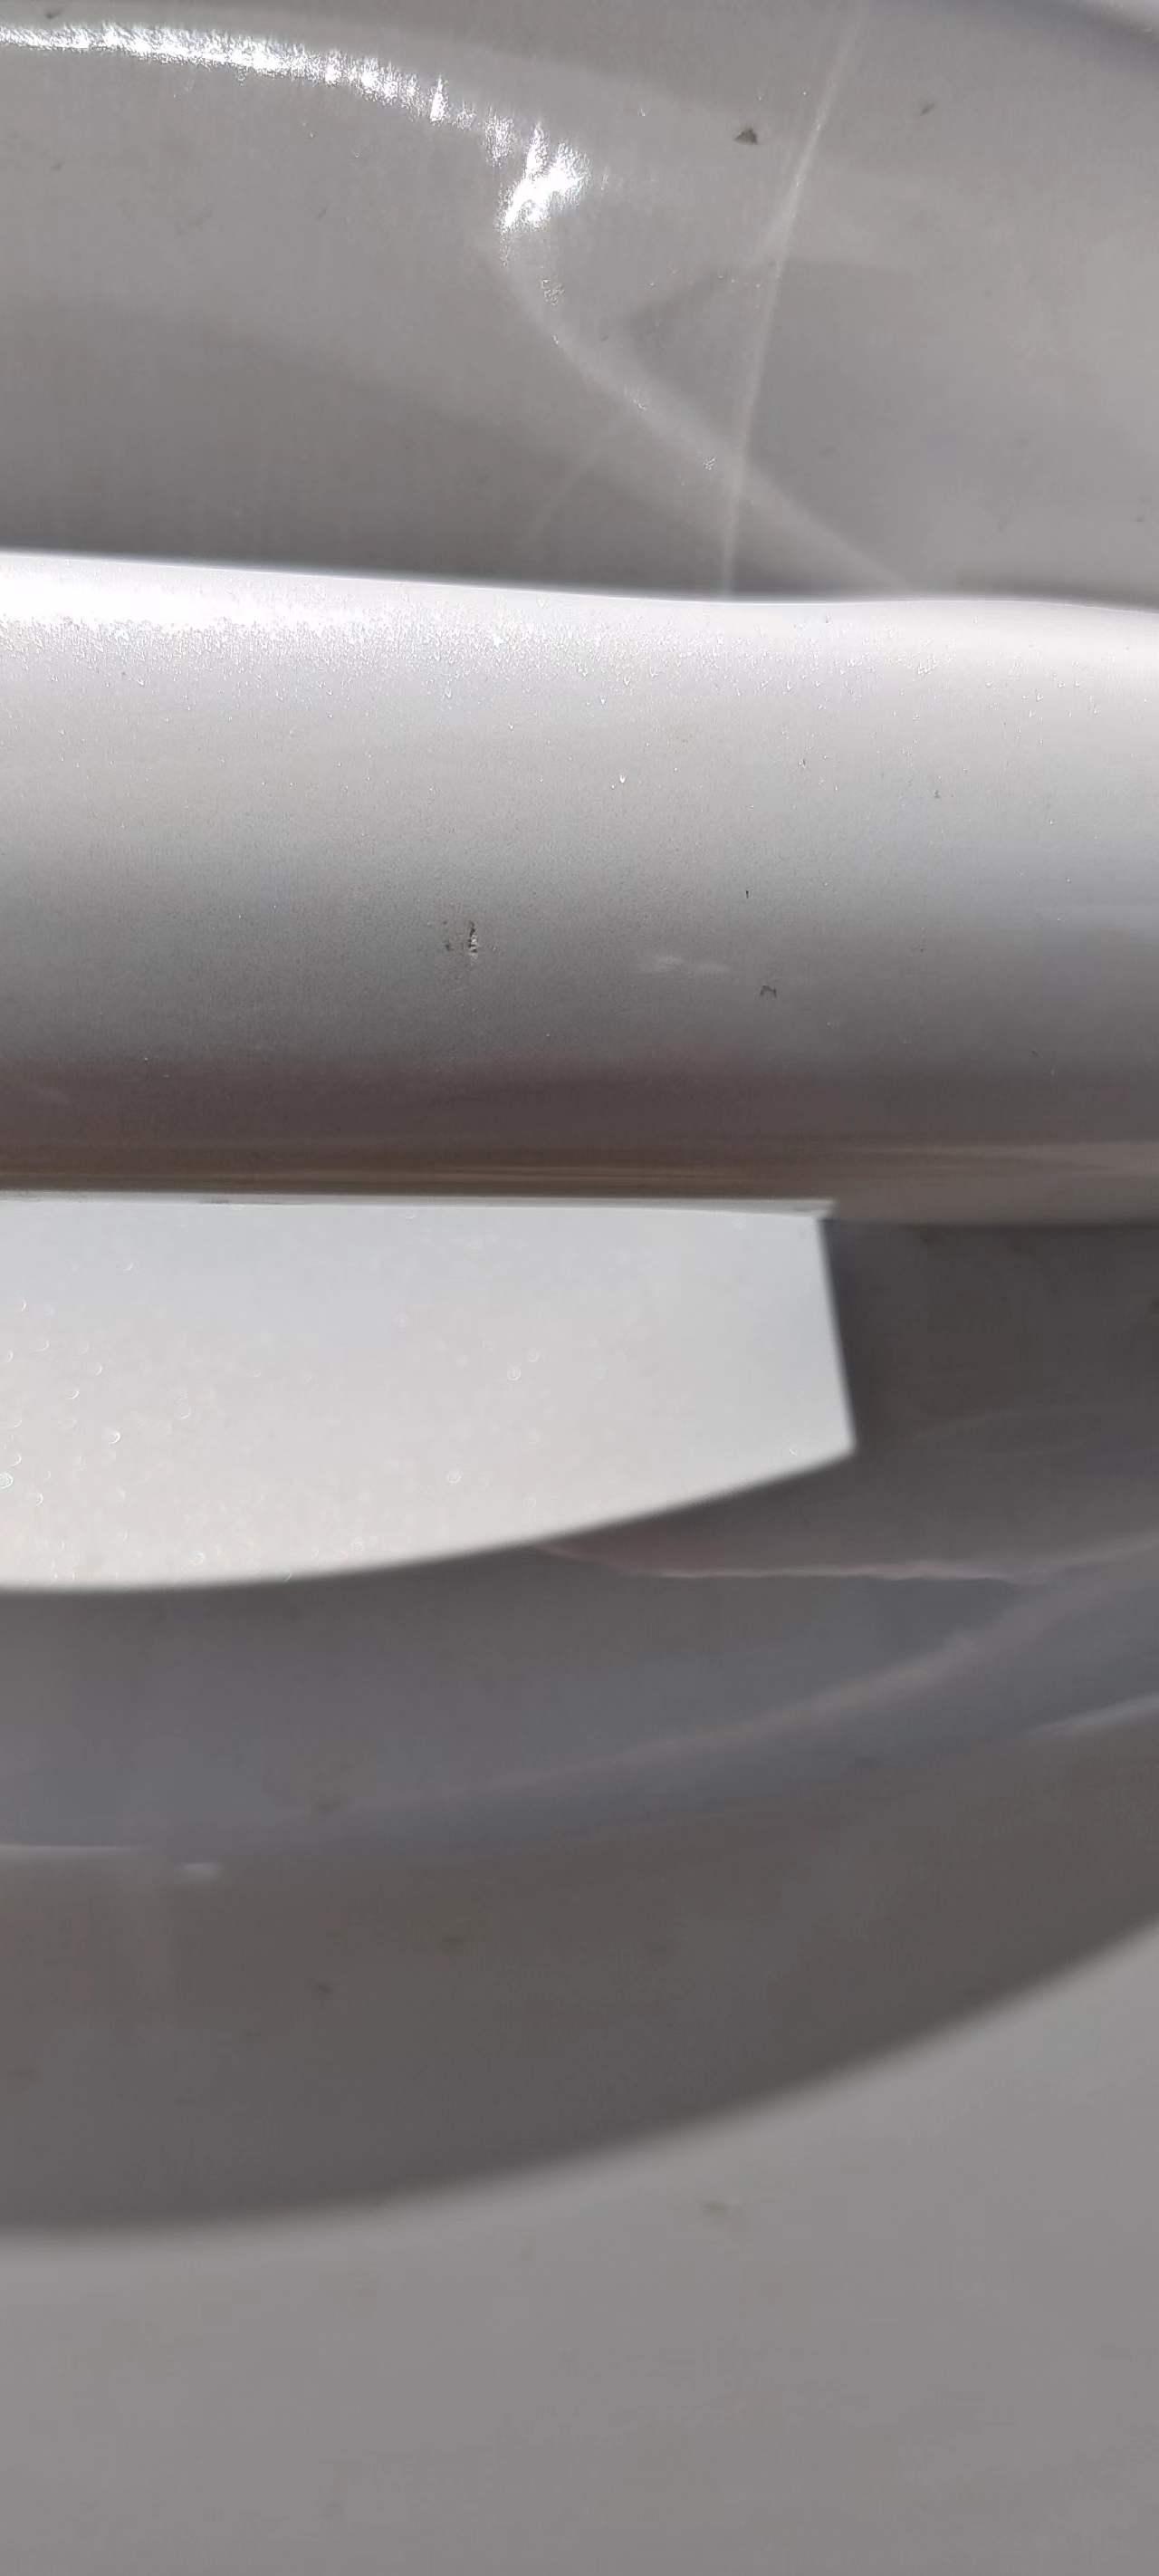 马自达阿特兹 车门把手有个坑印，洗车之后坑印旁边的保护膜（车自带的保护膜）掉了，对漆有影响吗